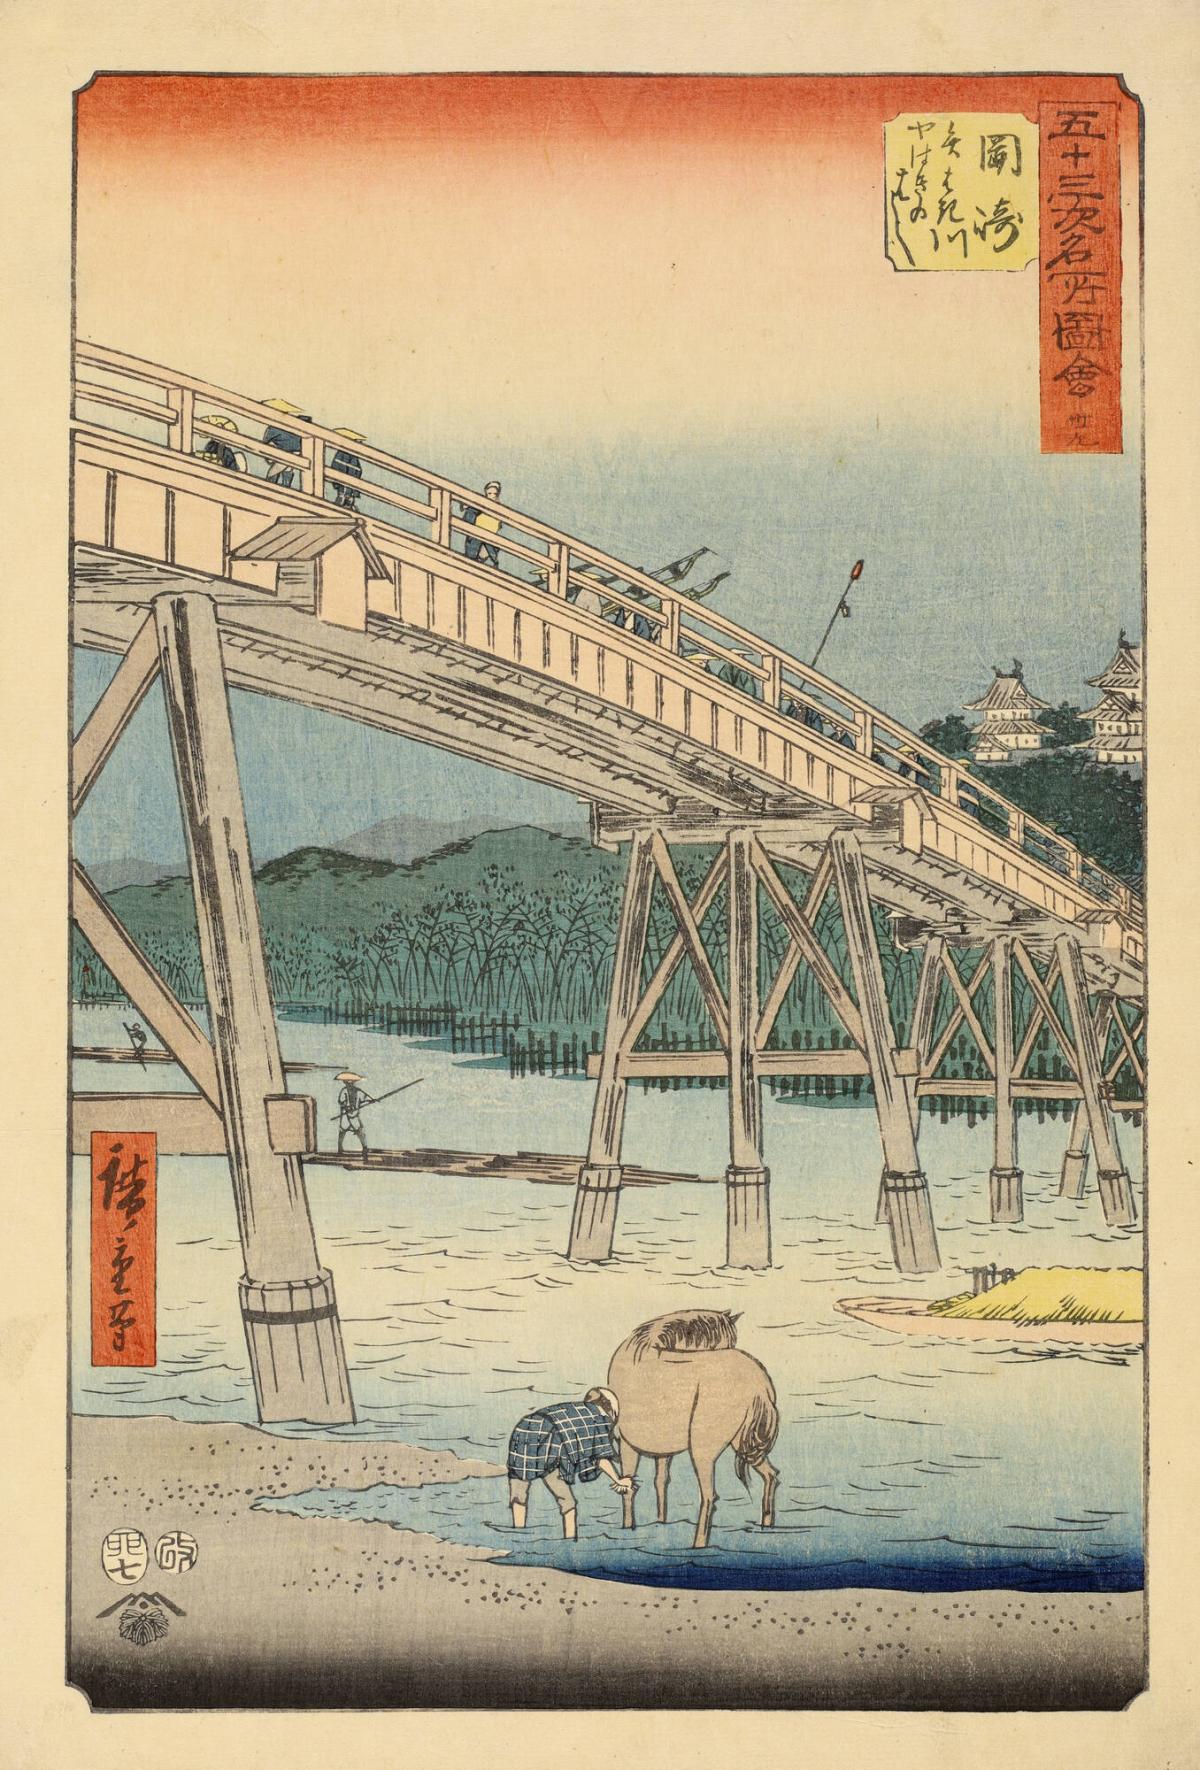 Yahagi Bridge on the Yahagi River at Okazaki, no. 39 from the 